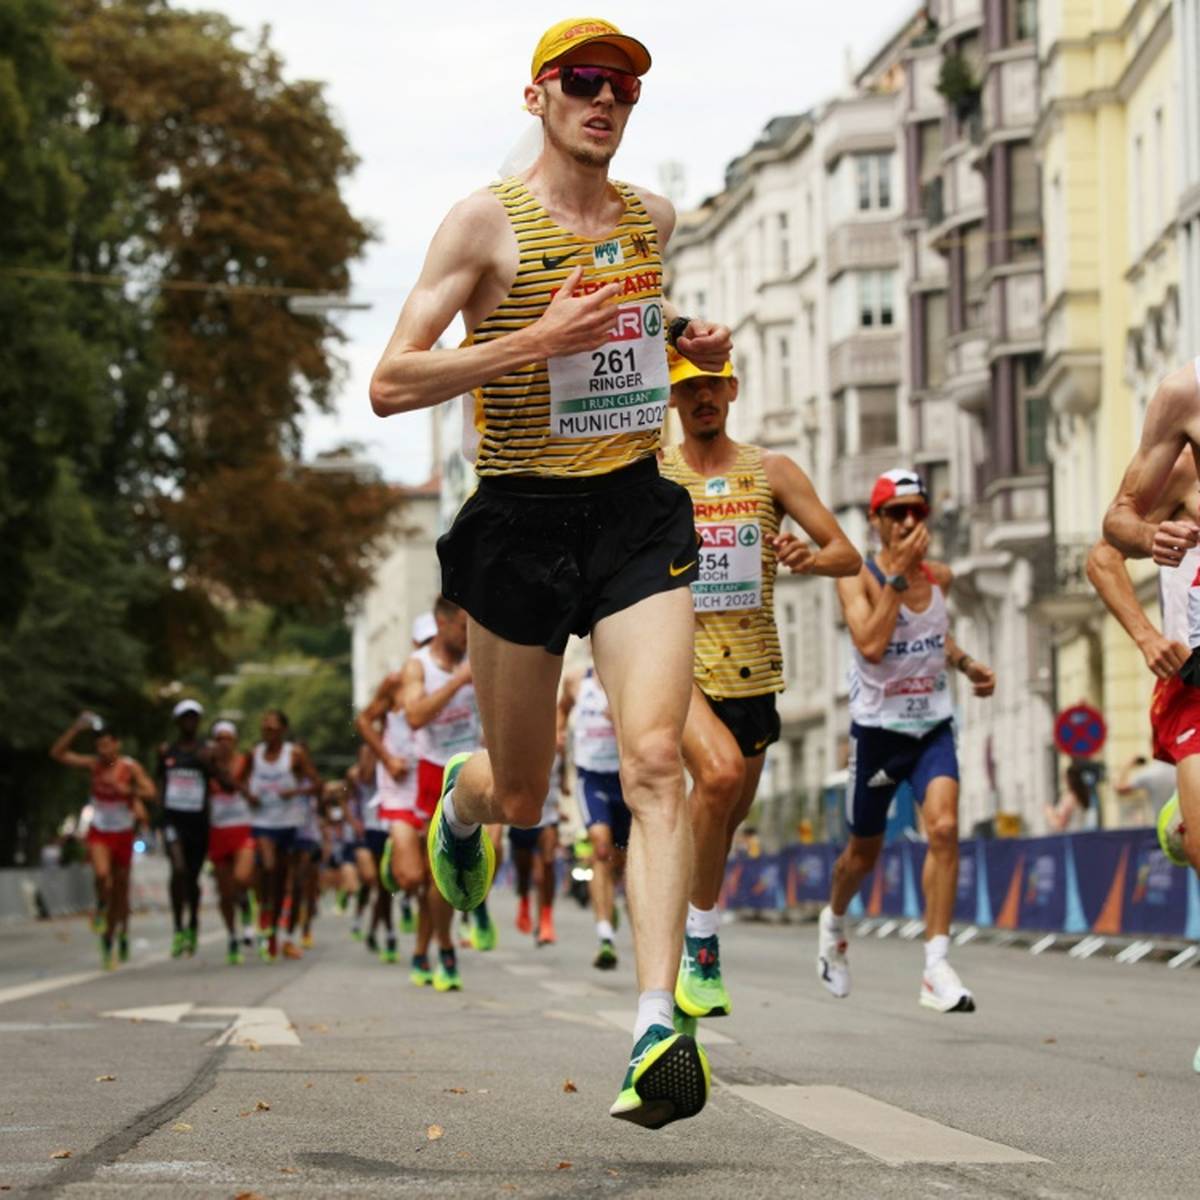 Damit war nicht zu rechnen: Richard Ringer schnappt sich bei den European Championships in München überraschend die Gold-Medaille im Marathon - dank eines beherzten Schlussspurts. 